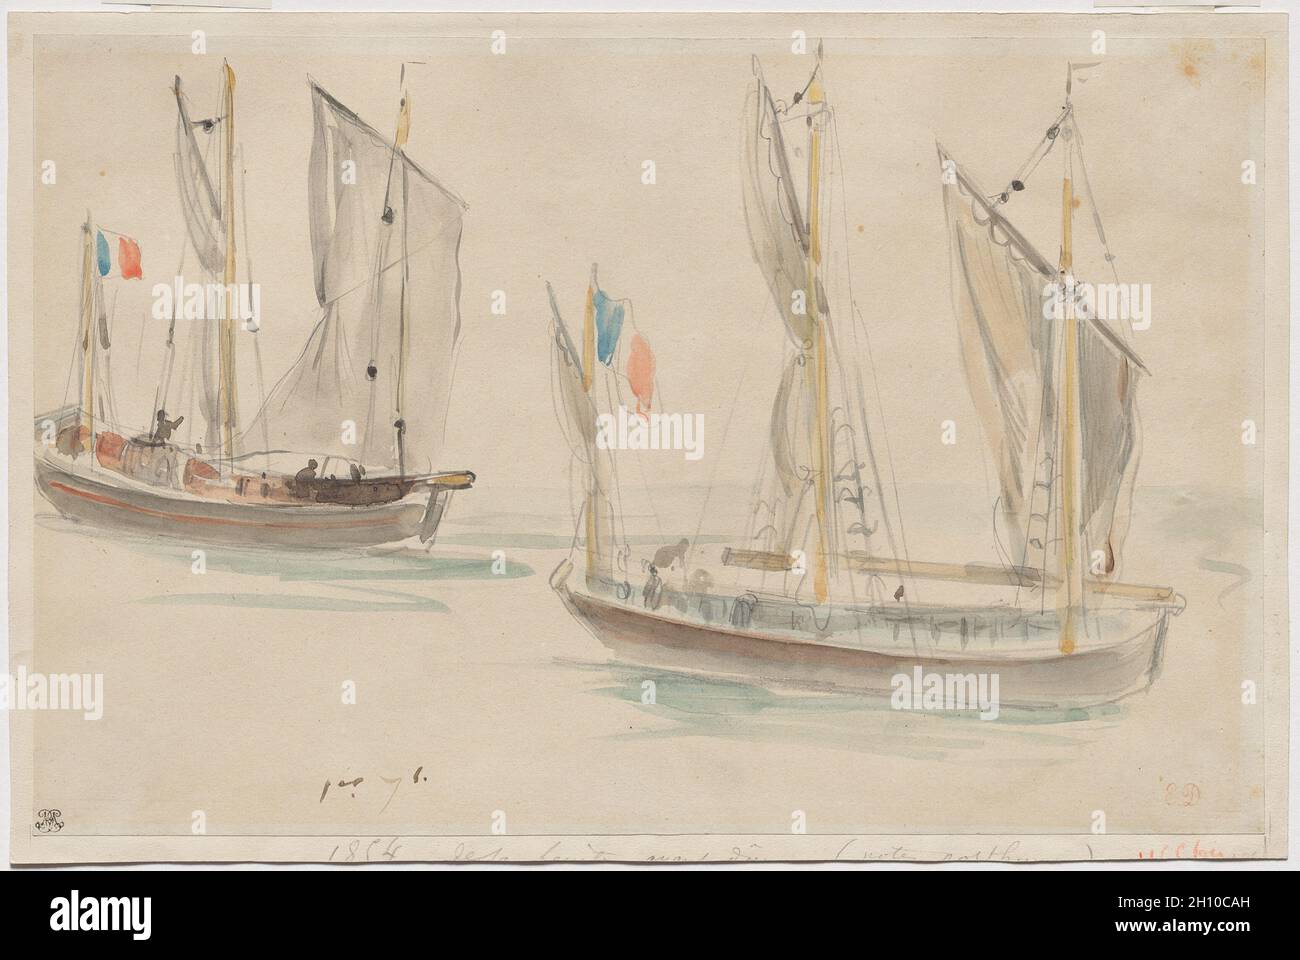 Deux bateaux au port de Dieppe, 1854.Eugène Delacroix (français, 1798-1863).Crayon et aquarelle sur papier blanc cassé collé sur carton blanc cassé; image: 22.5 x 34.6 cm (8 7/8 x 13 5/8 po.); feuille: 22.5 x 34.6 cm (8 7/8 x 13 5/8 po.); monté: 24 x 36 cm (9 7/16 x 14 3/16 po.).Dans ce dernier dessin, Eugène Delacroix a utilisé des couches d'aquarelle pour enregistrer deux grands bateaux flottant dans un port, en contraste avec les tons lumineux des drapeaux français volant sur les deux avec les teintes subdulées de l'eau qui les entoure.L'artiste a enregistré la scène au cours d'un de cinq séjours à Dieppe, une côte Banque D'Images